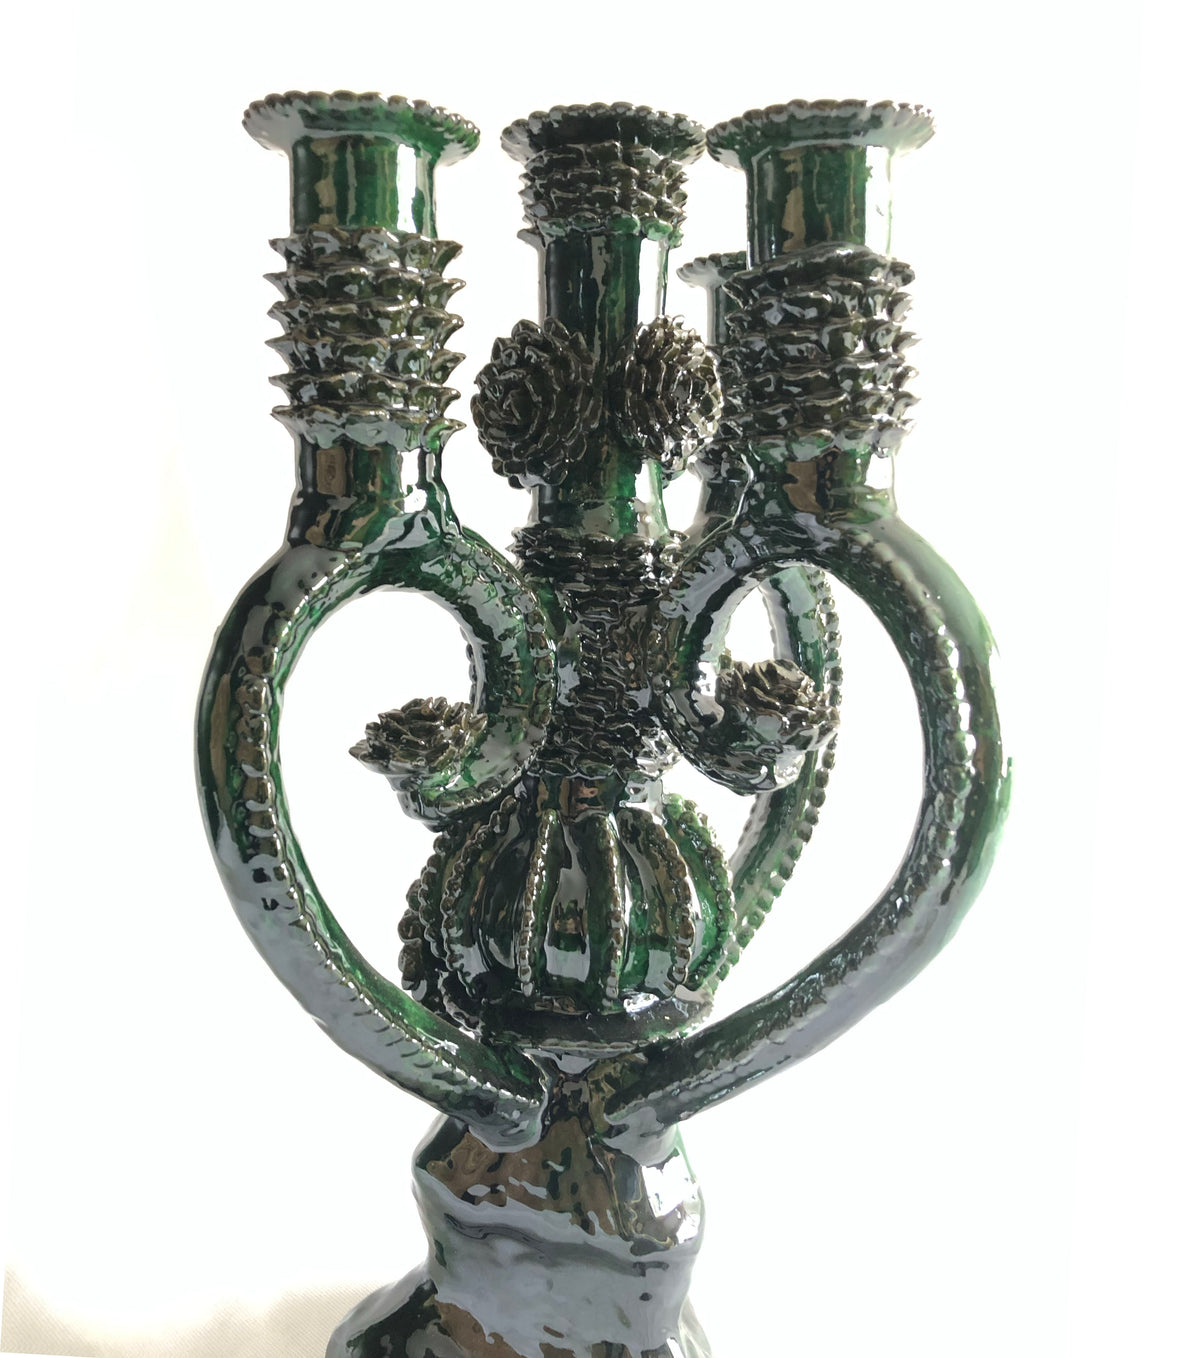 Candelero verde de 4 velas - Barro vidriado - 45 cm. 18 in.